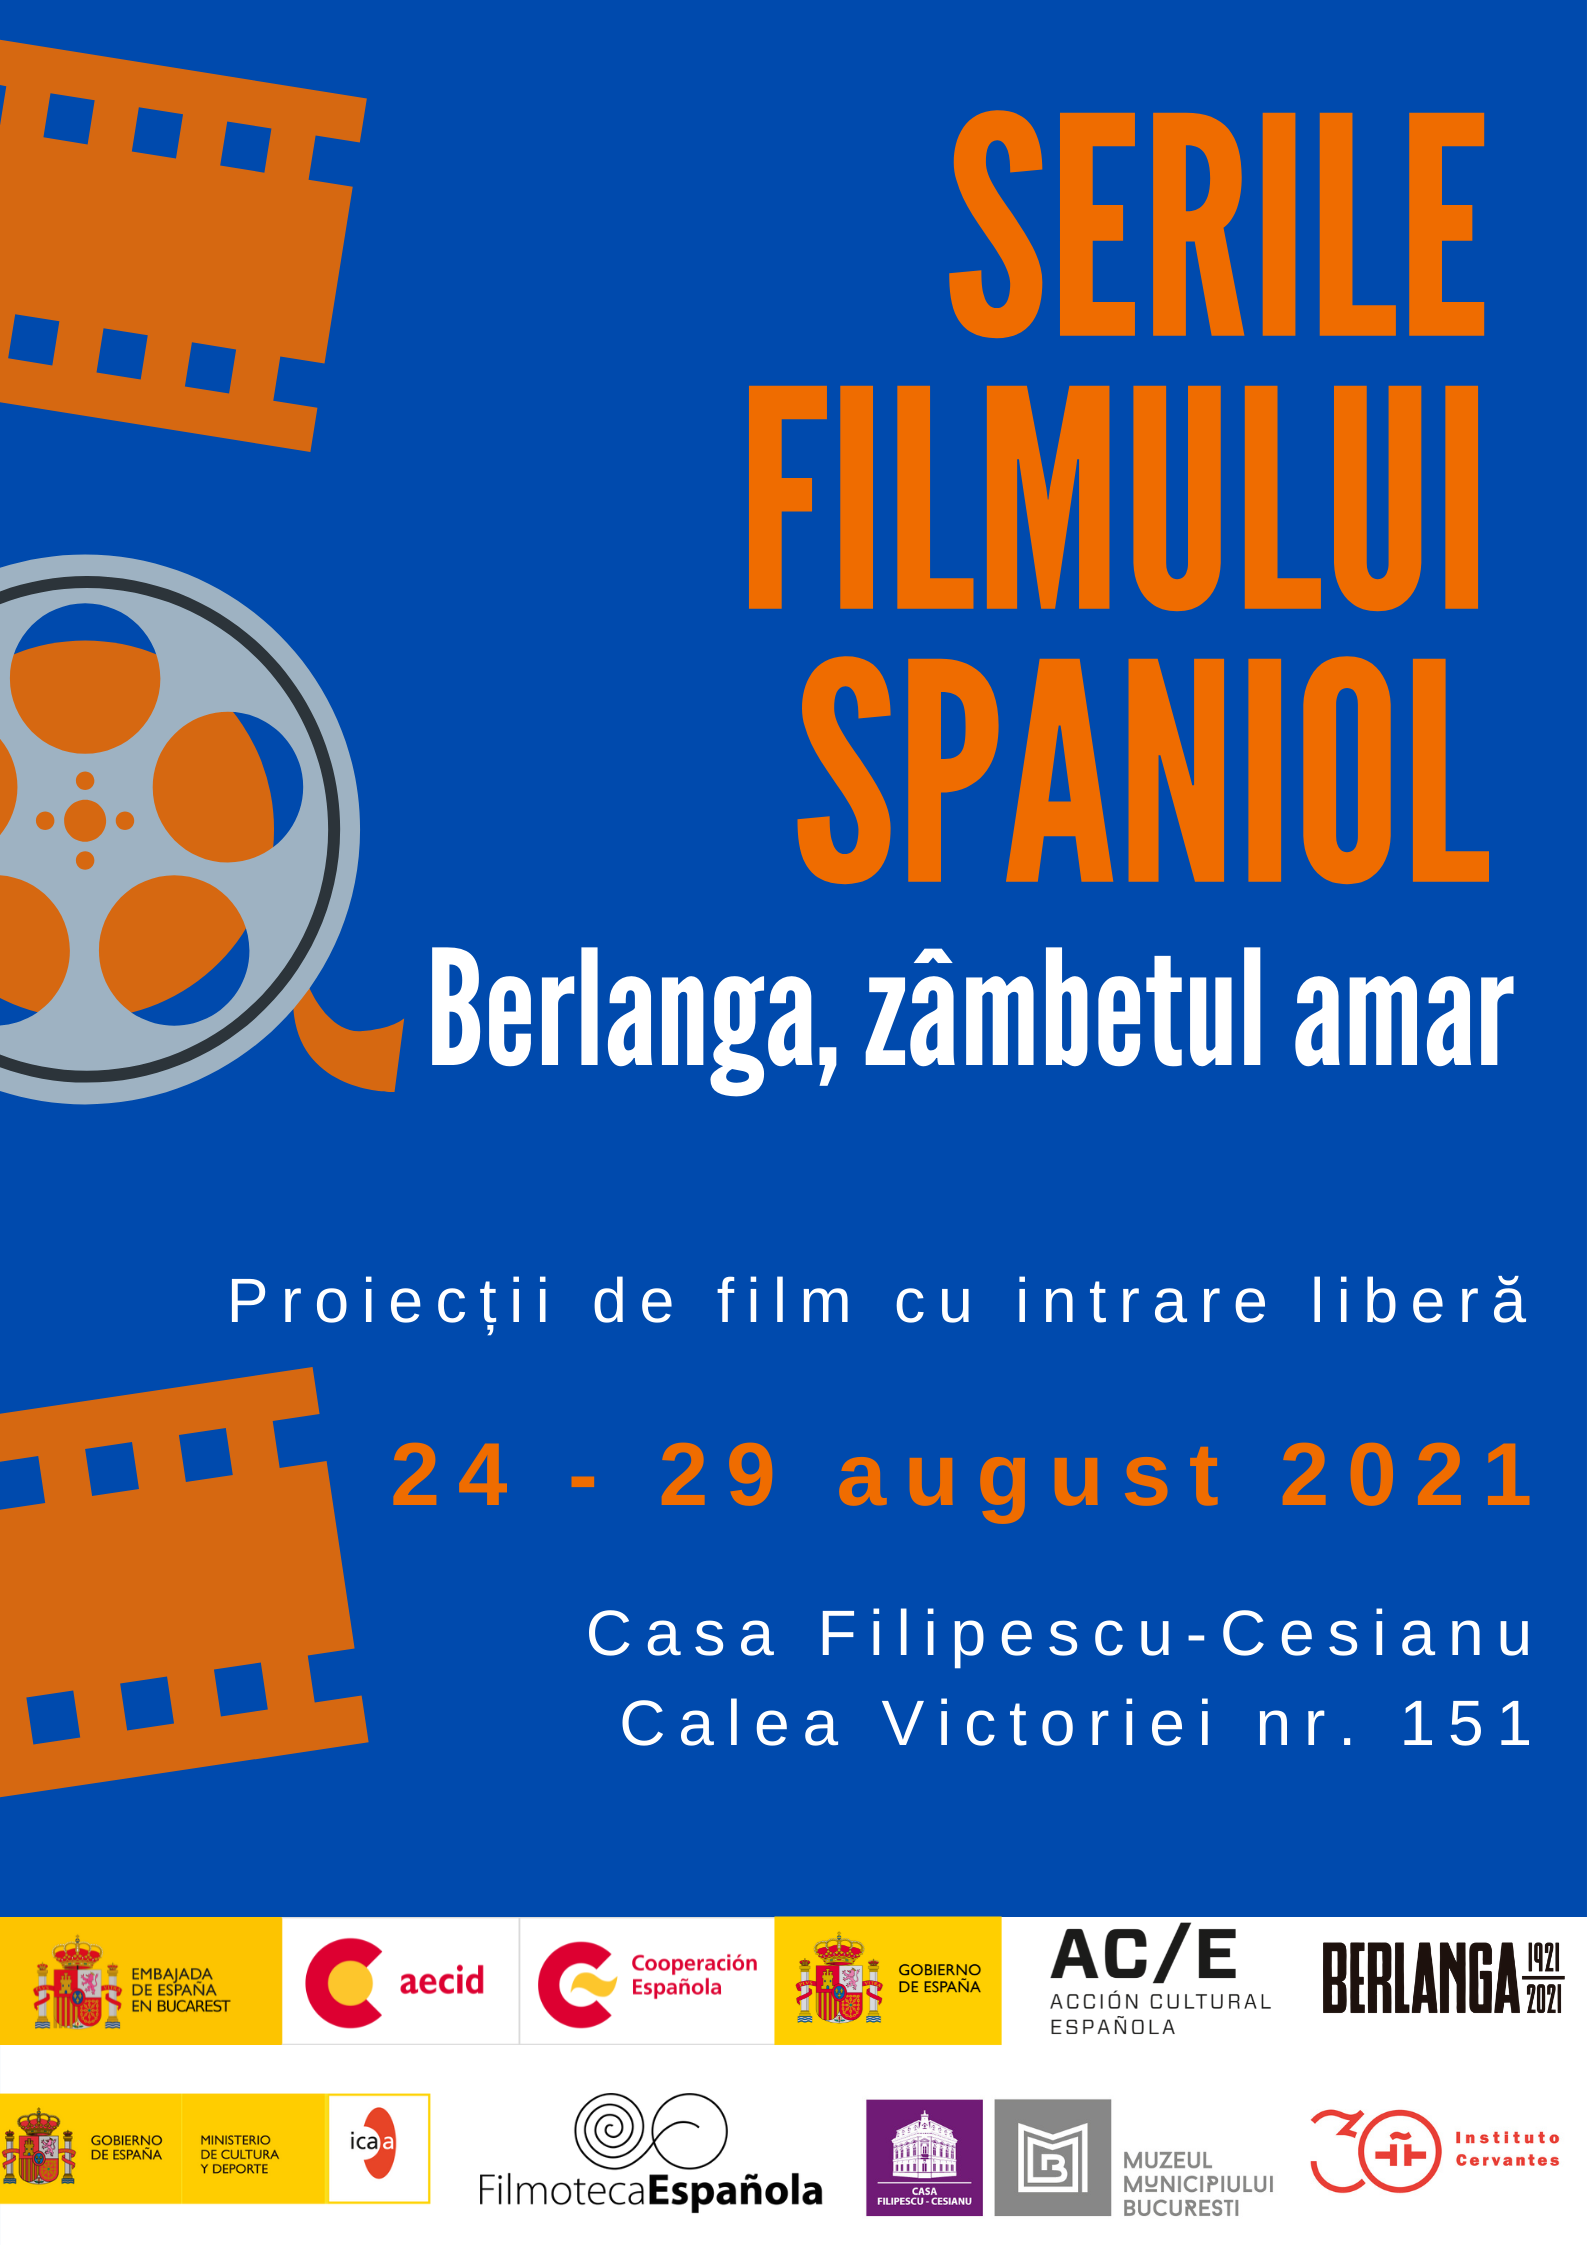 Serile filmului spaniol, la Casa Filipescu-Cesianu